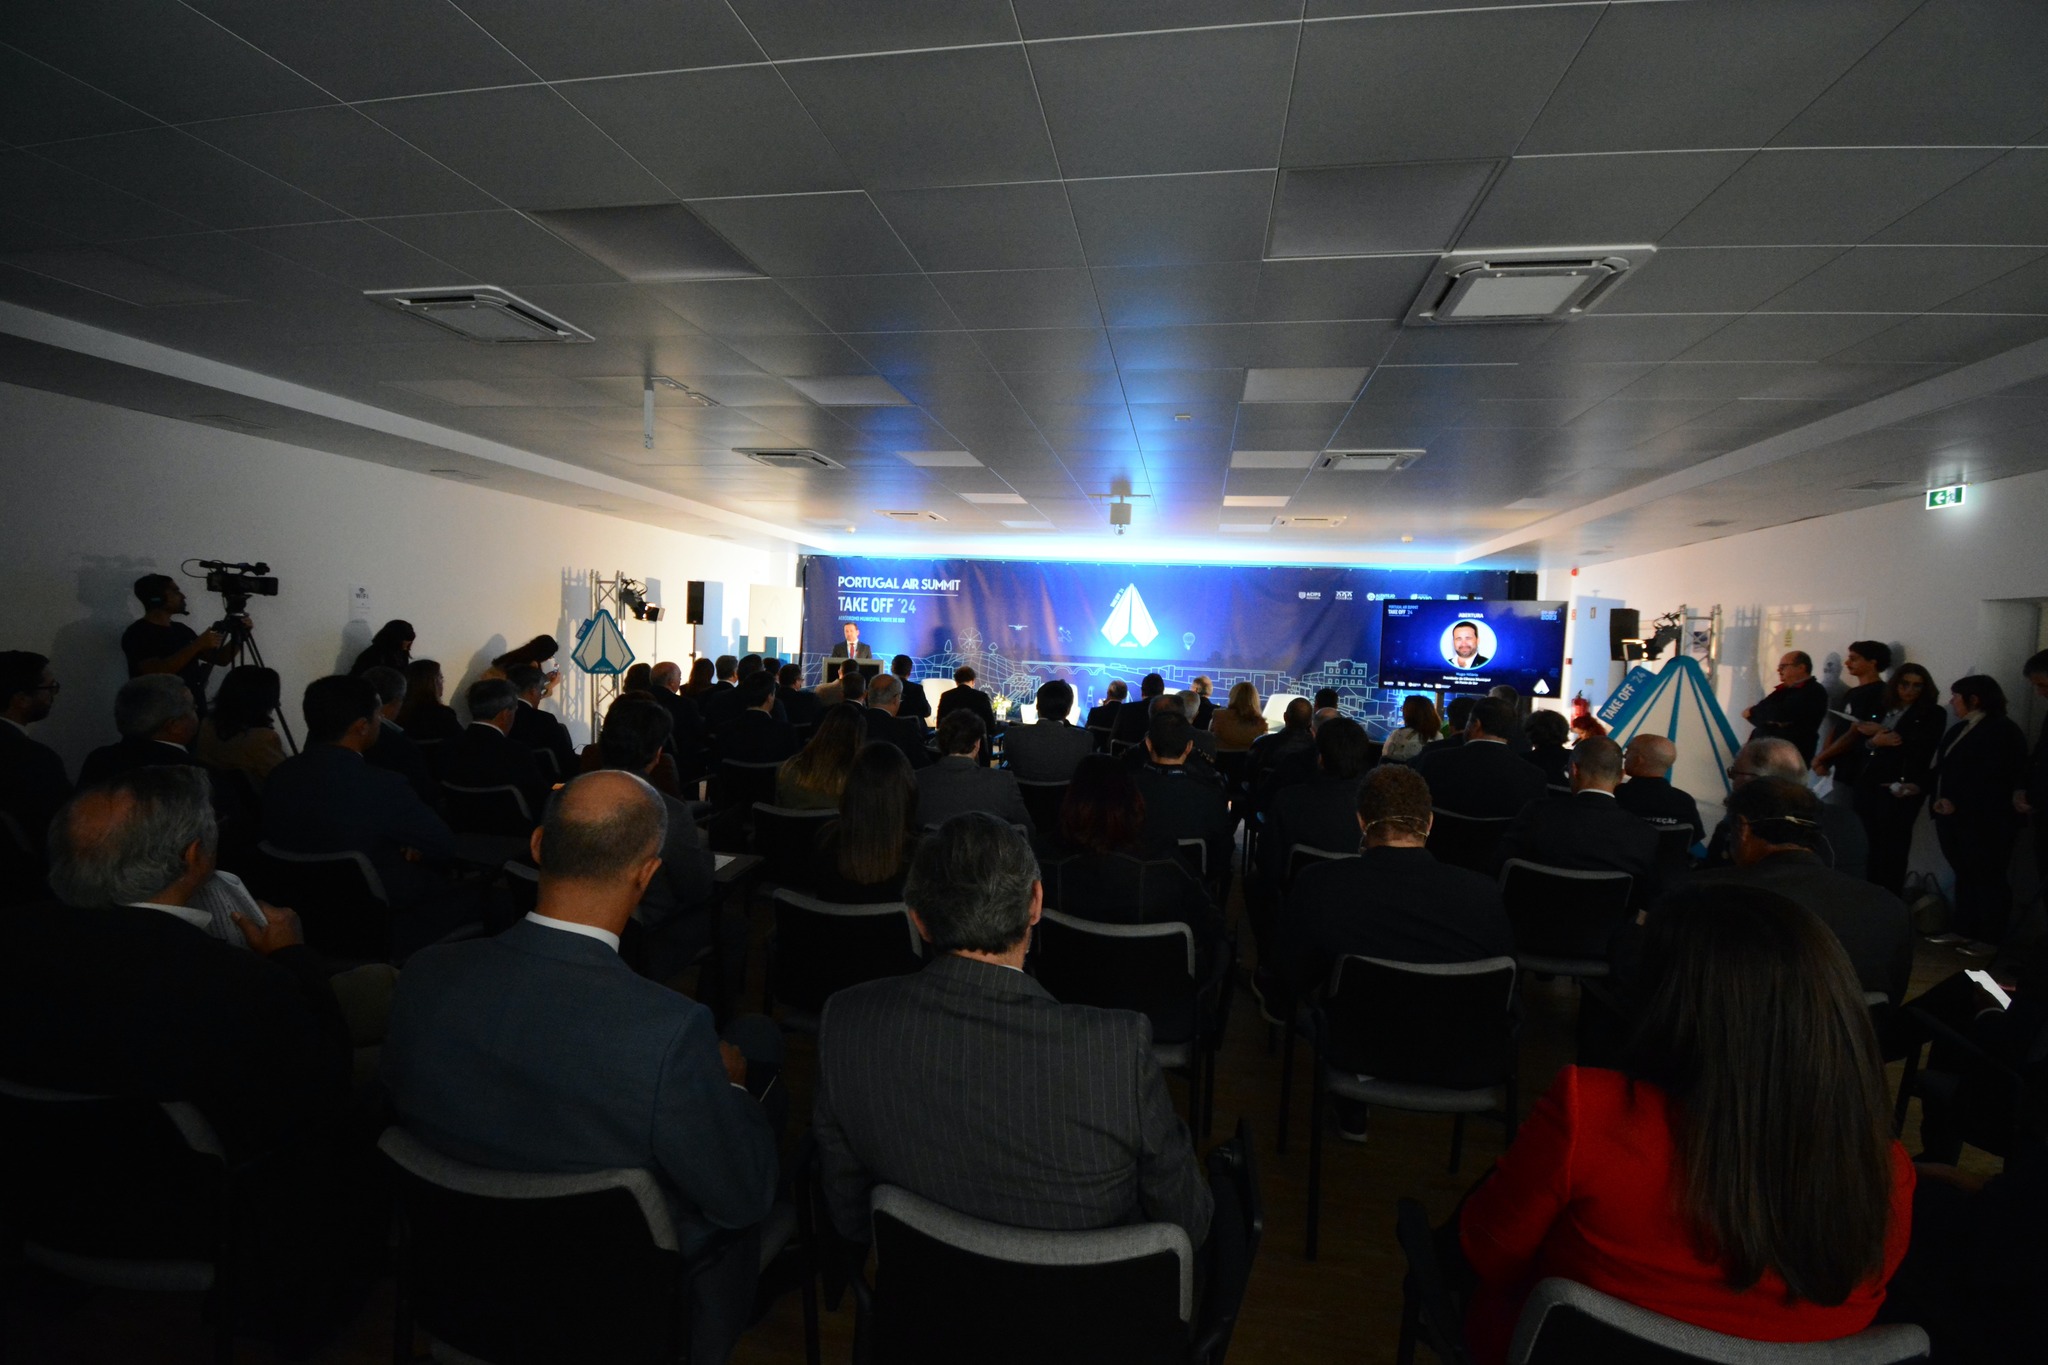 Conferências do Portugal Air Summit Take Off 24 já Começaram